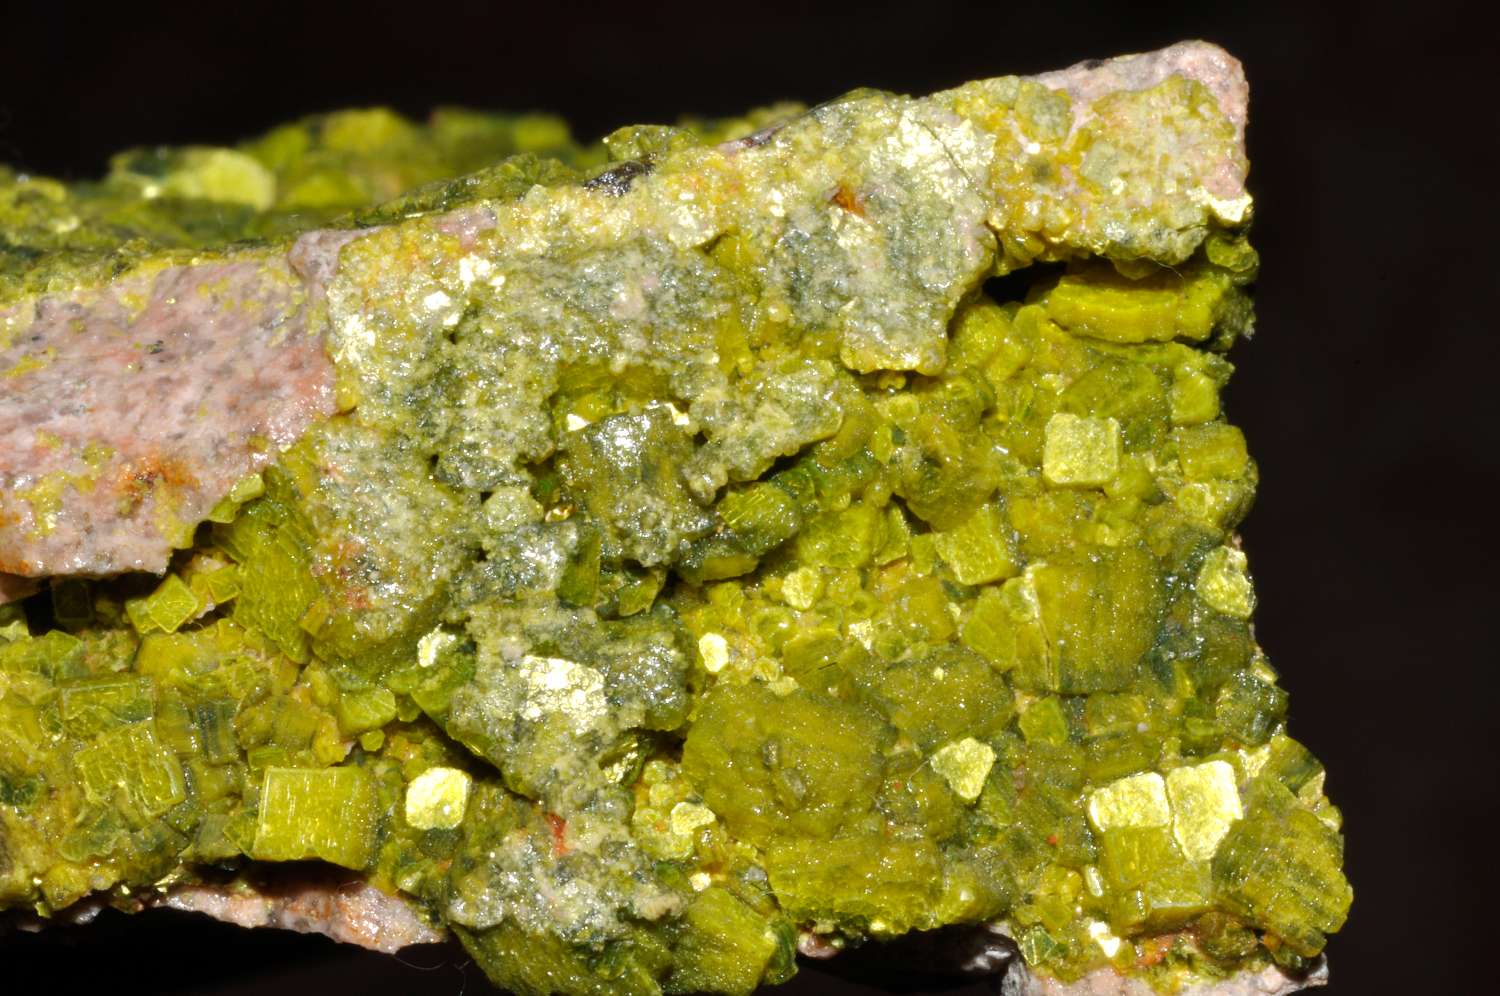 L'uranium est un élément radioactif présent naturellement dans certains minéraux comme ici l'autunite. © Parent Géry, Wikimedia Commons, CC by-sa 3.0